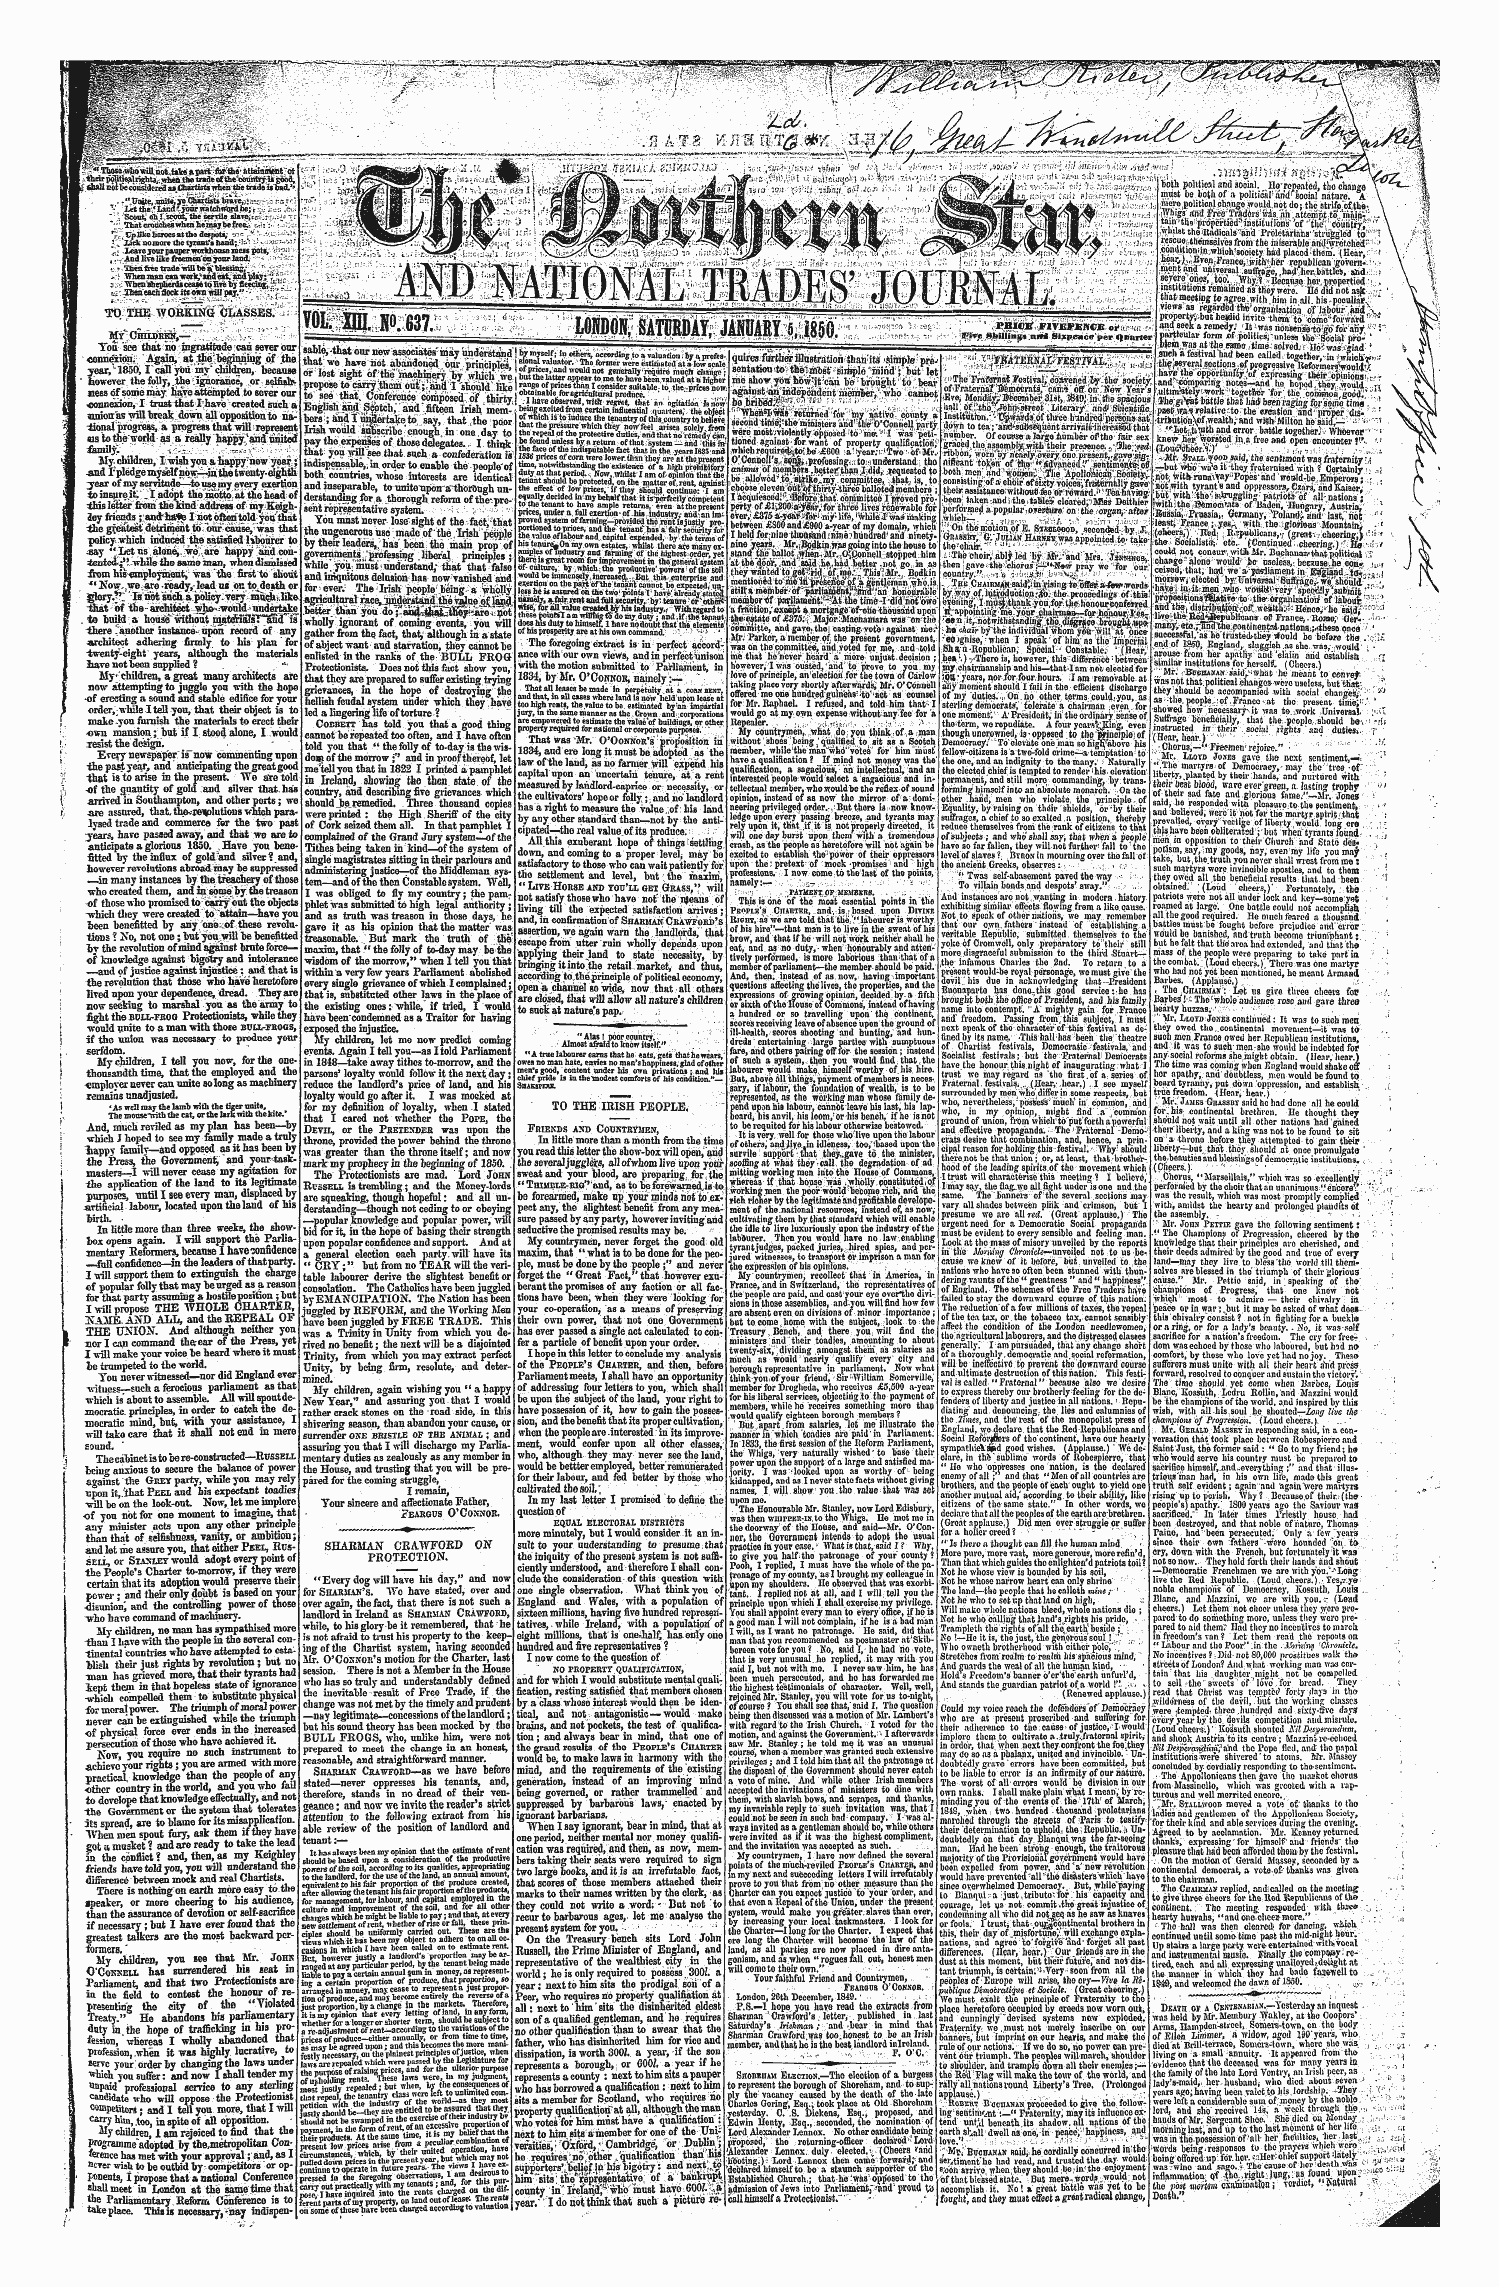 Northern Star (1837-1852): jS F Y, 1st edition - To The Tvqrkikgjgi^Lsses